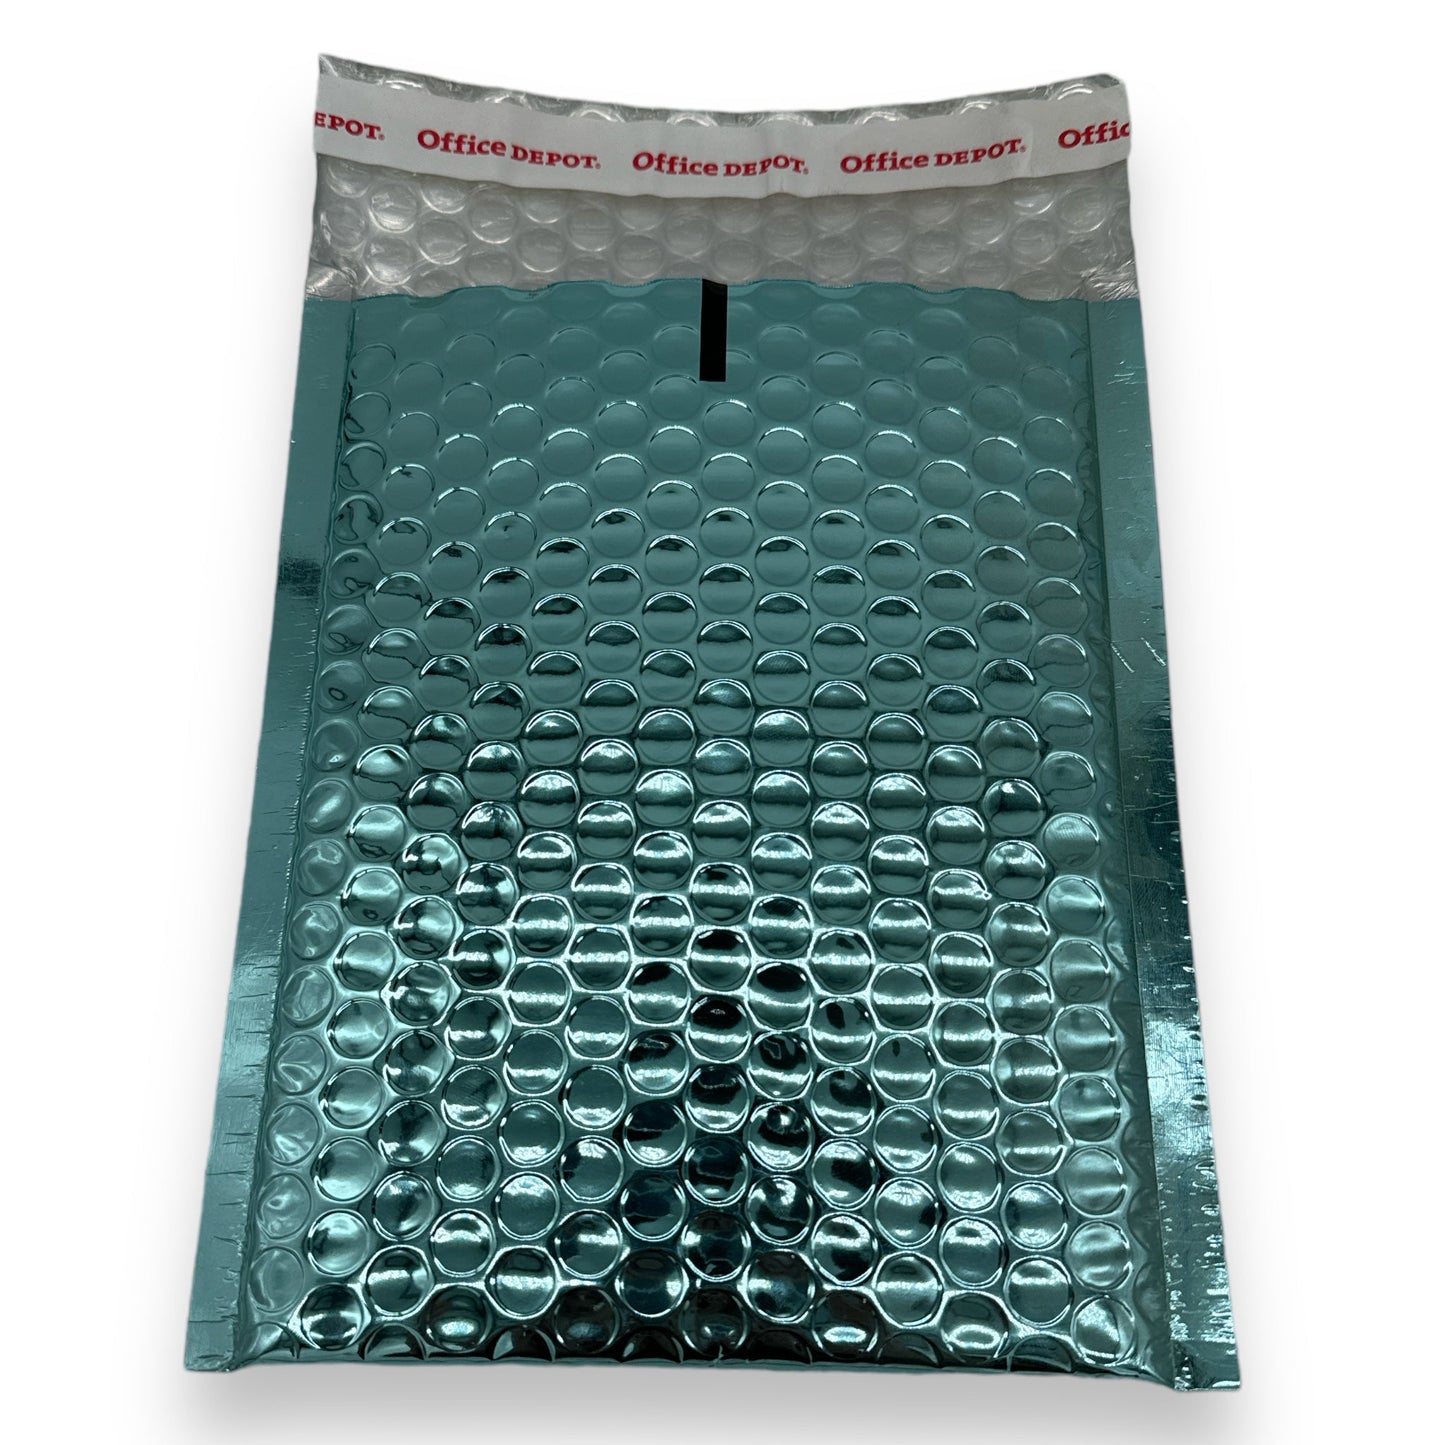 Bubble Plastic Envelopes Metallic 3 Colors 22X17cm 1 Piece 